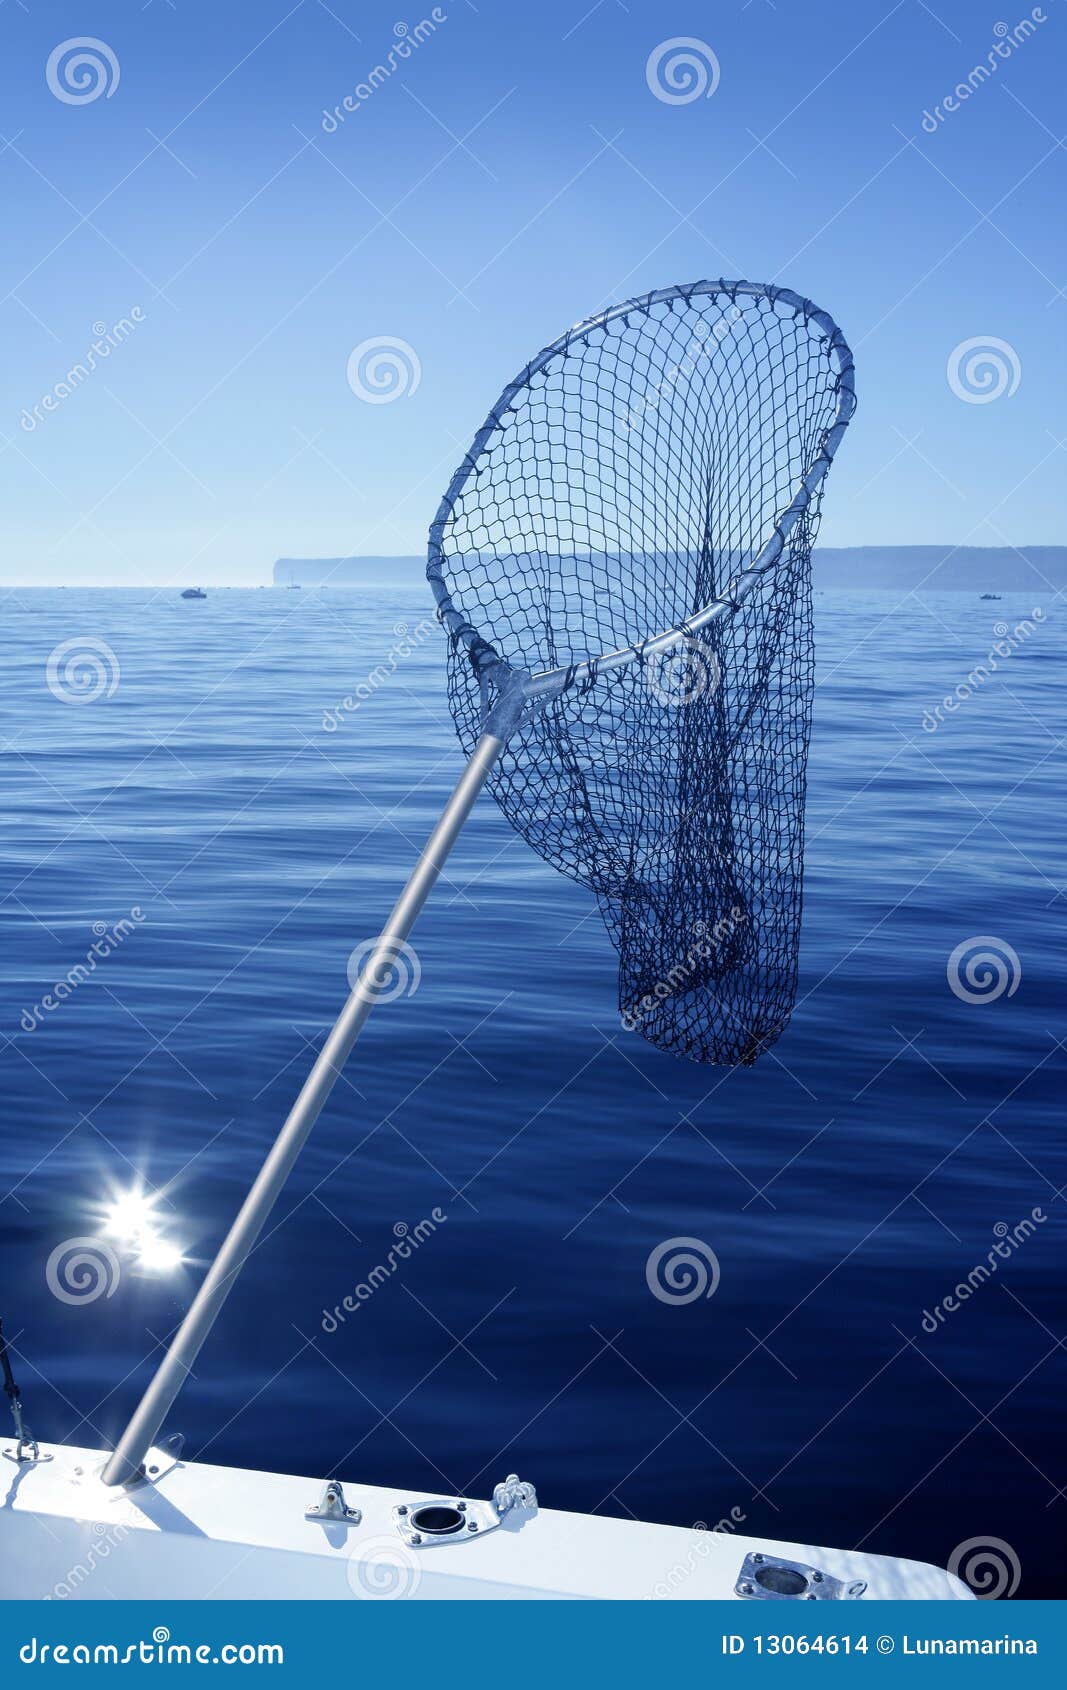 https://thumbs.dreamstime.com/z/fishing-scoop-net-boat-blue-sea-13064614.jpg